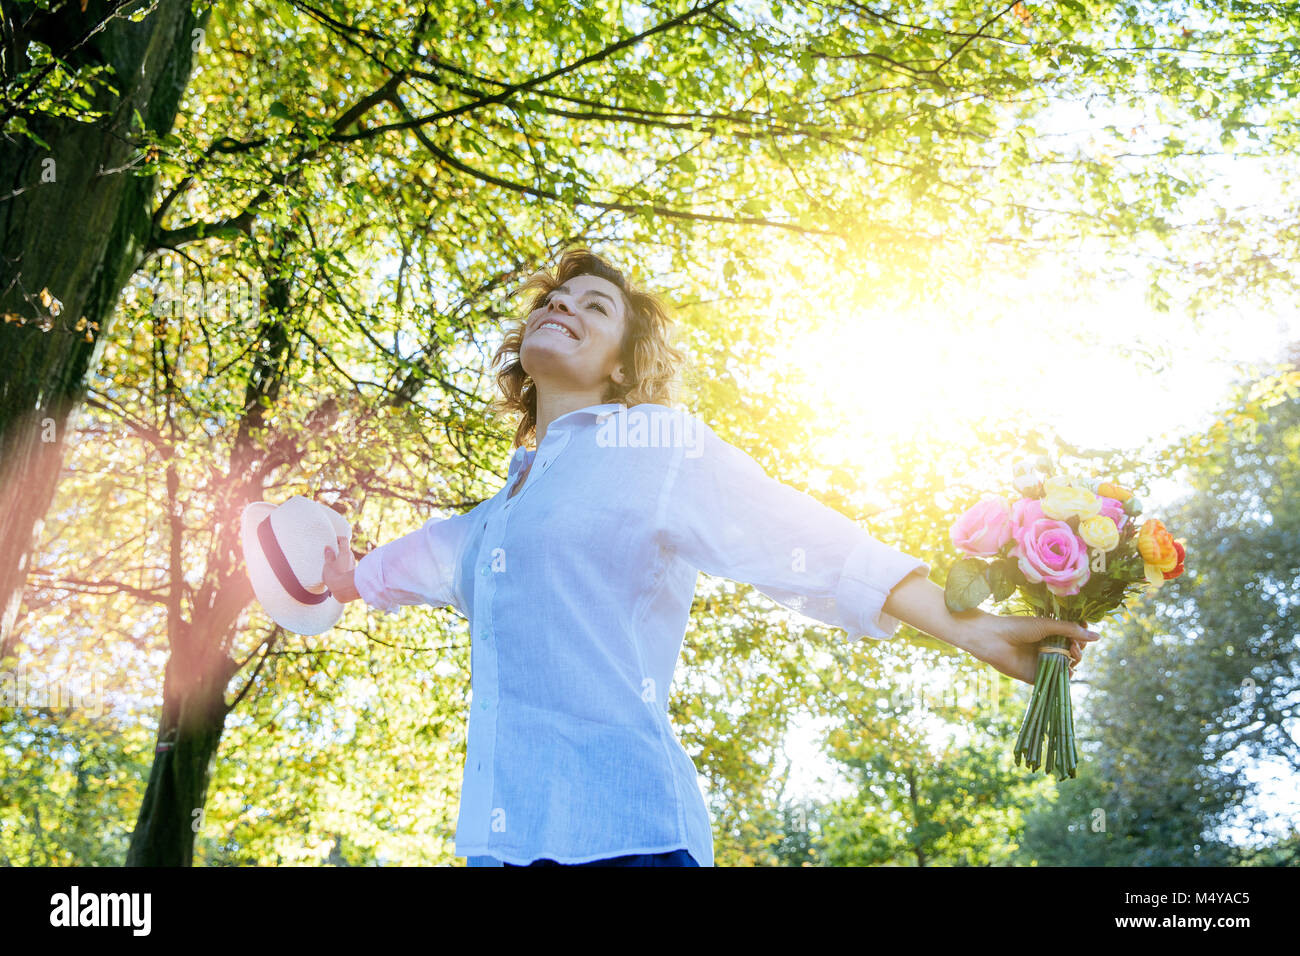 Die Natur genießen. Junge Frau Arme angehoben, genießen die frische Luft im grünen Wald. Stockfoto